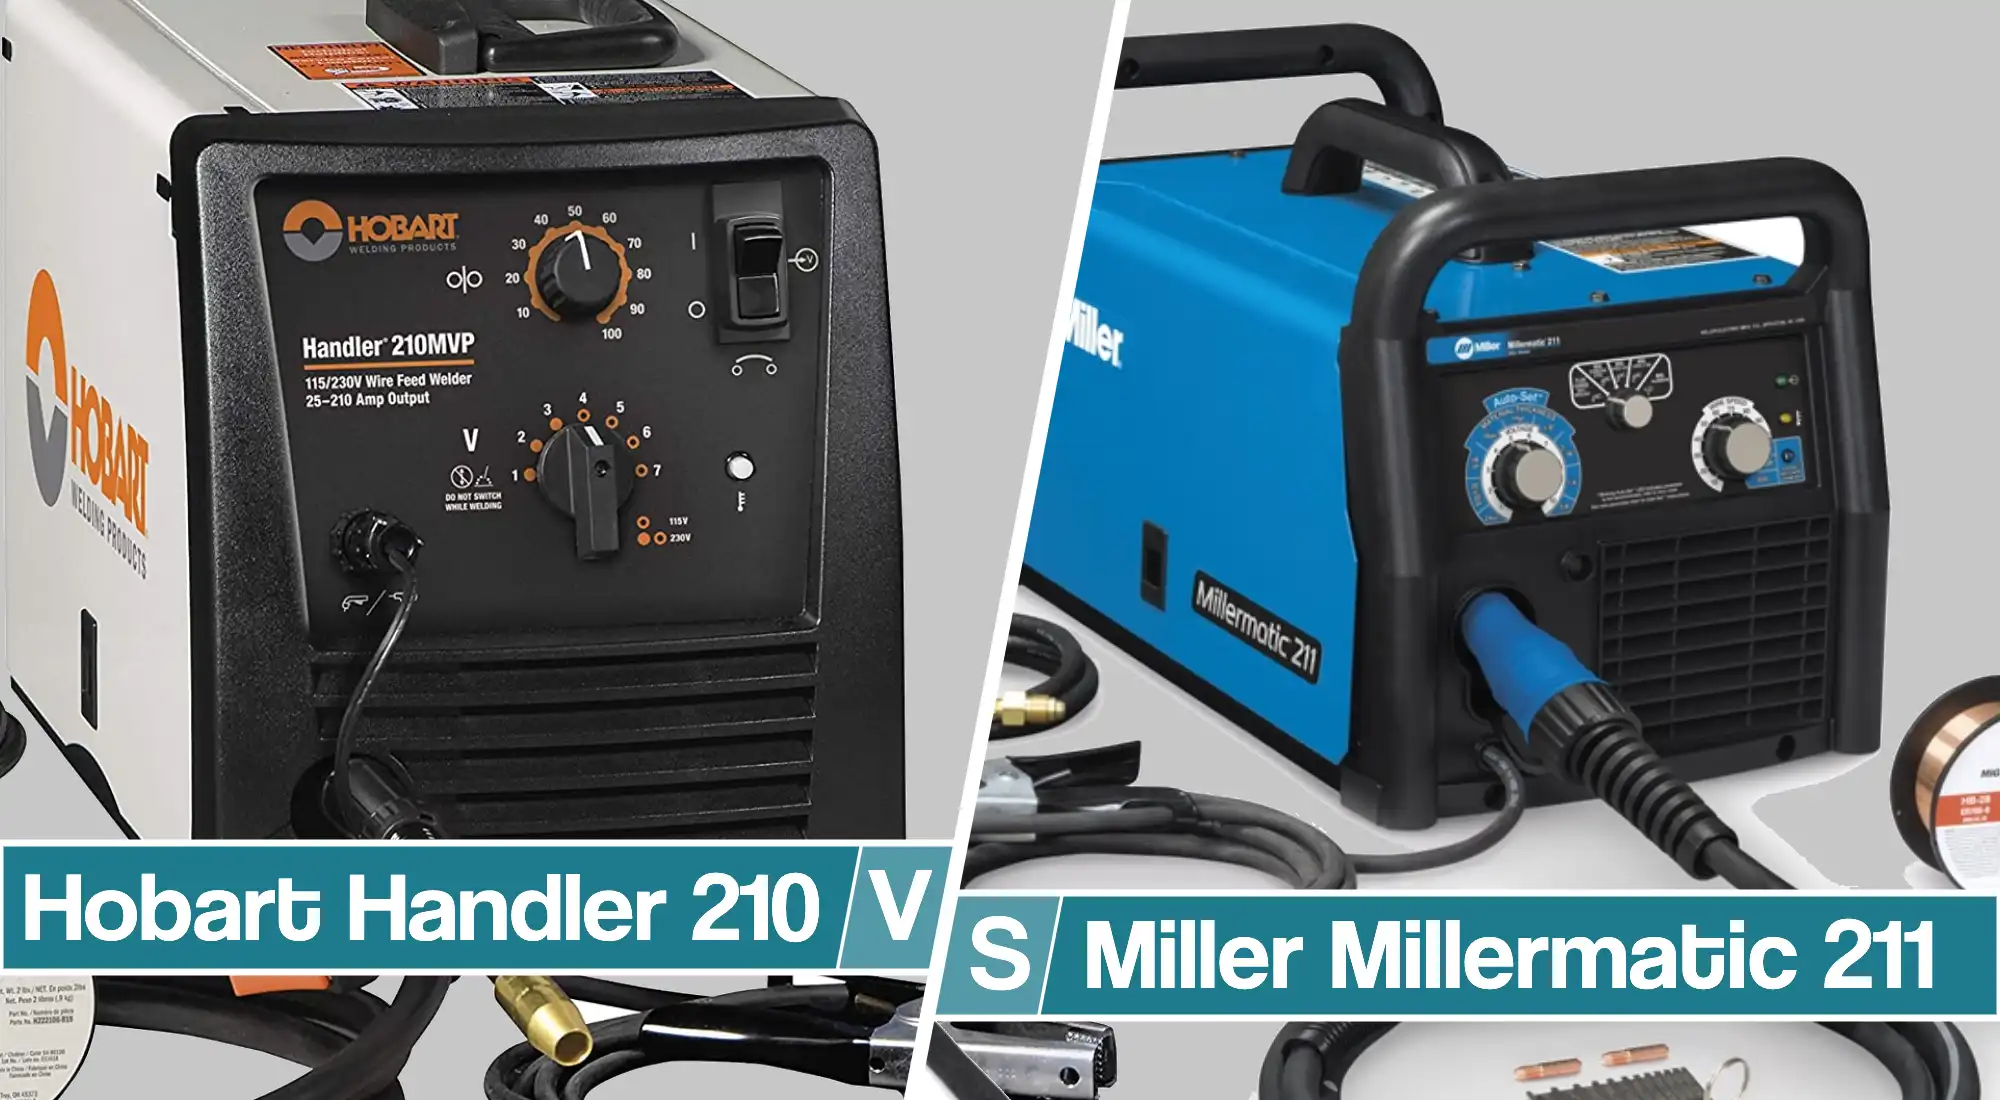 Hobart Handler 210 Vs Miller Millermatic 211- Detailed Back to Back comparison of Key Features